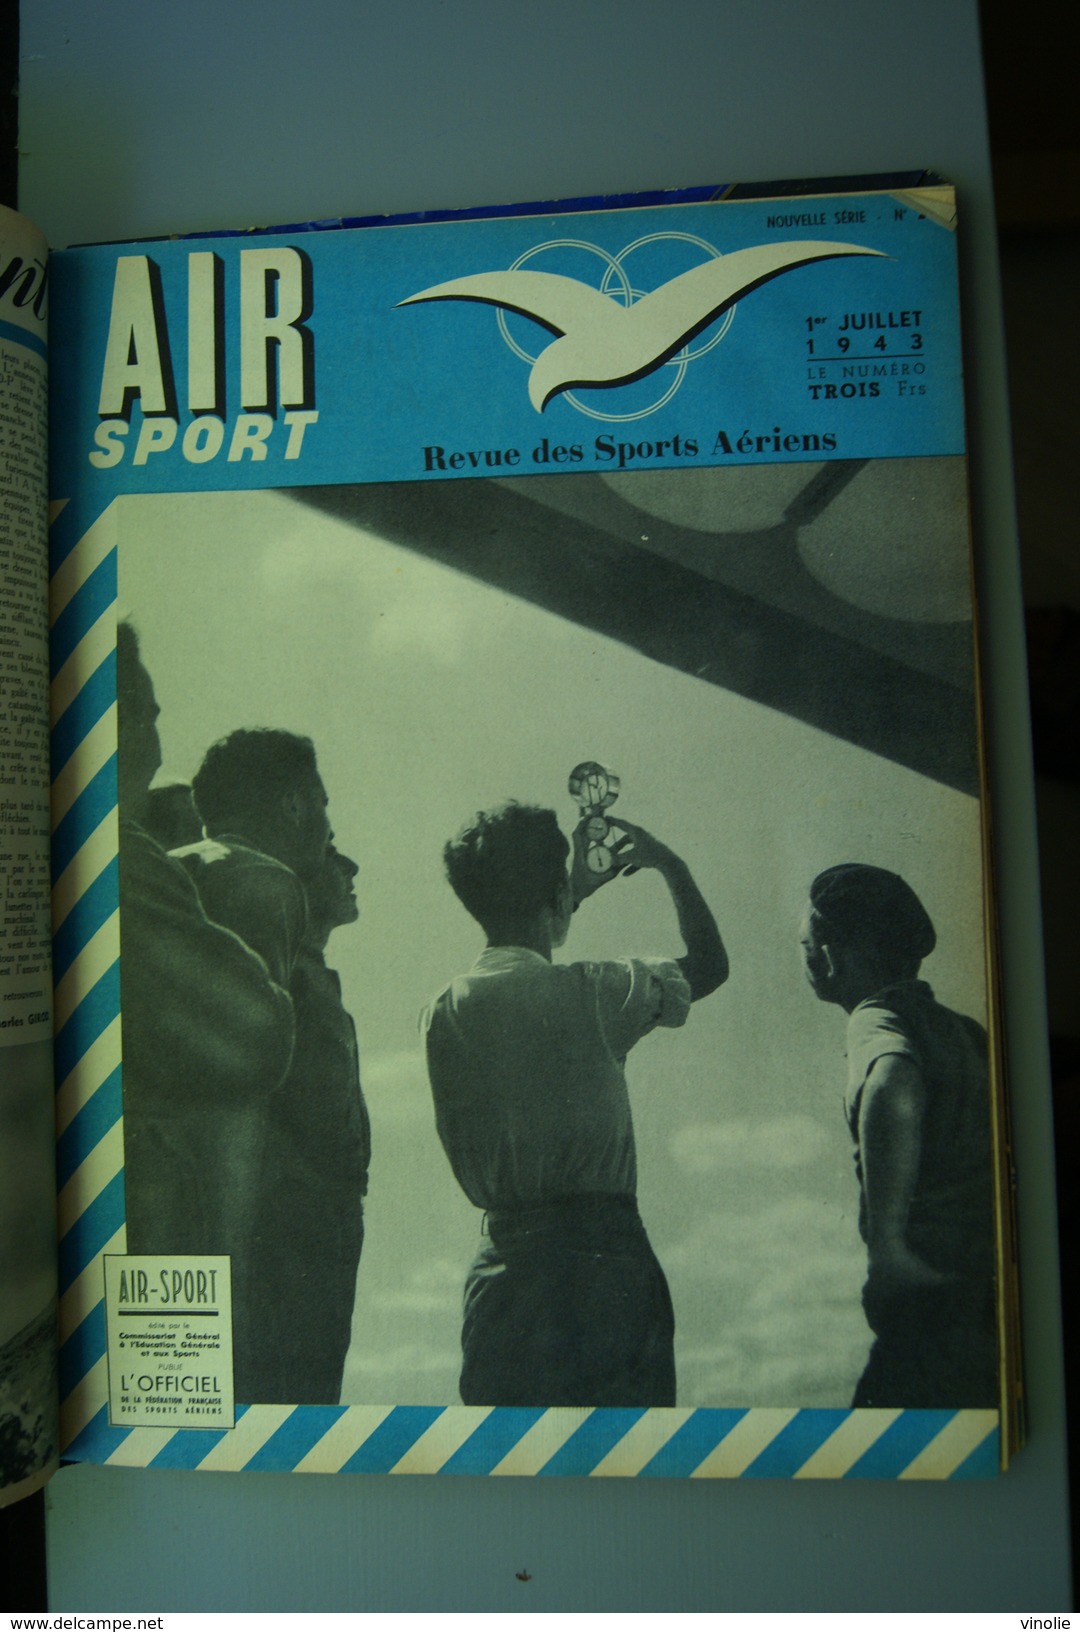 Livre relié les 18 numéros d'air sport   1943. voir photos des 18 unes et liste des articles.